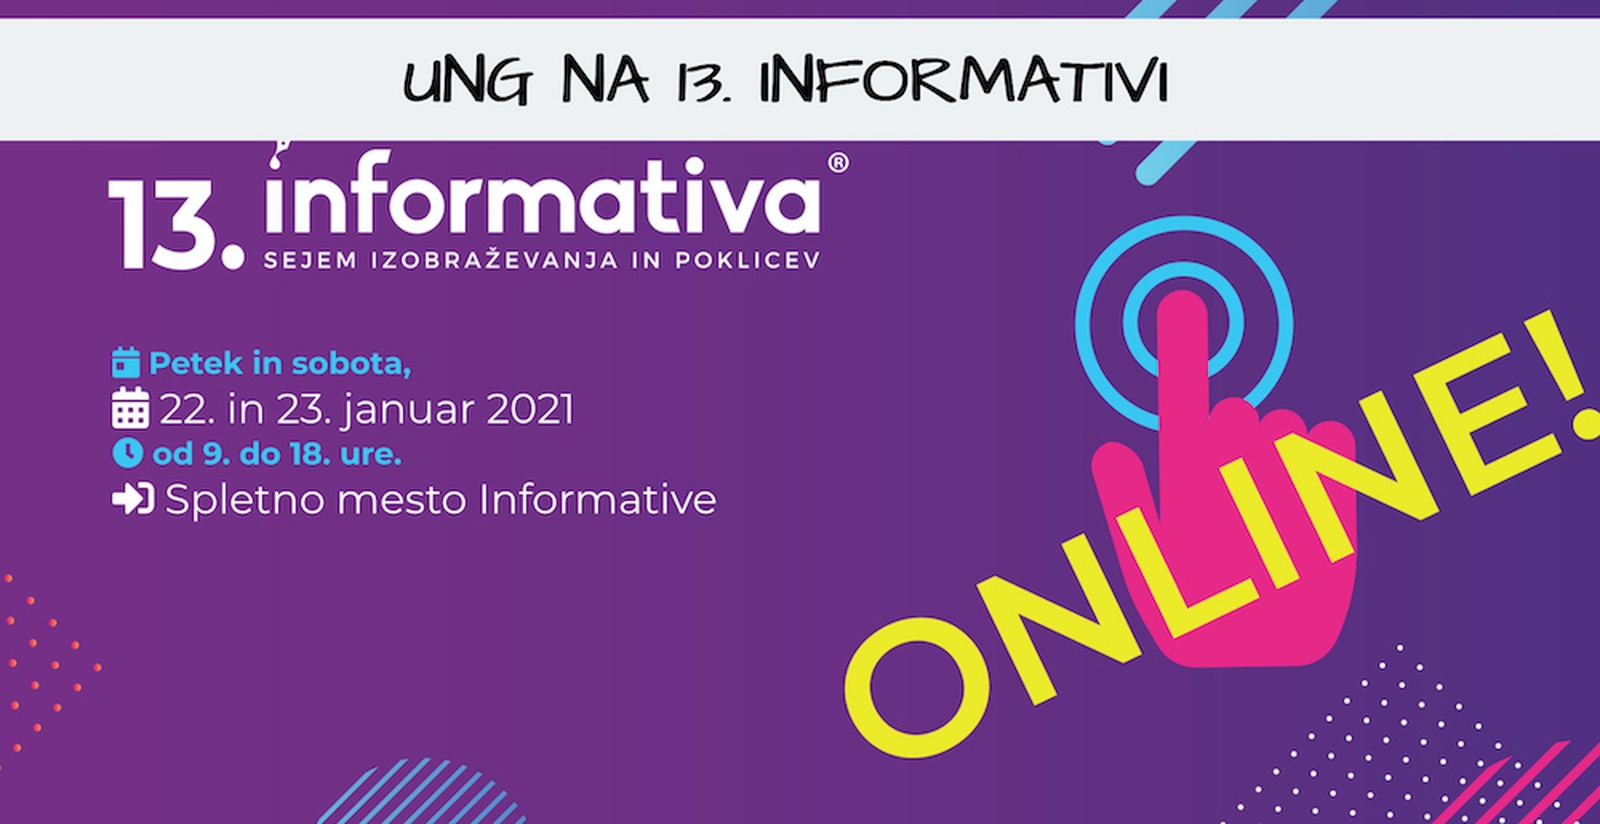 Univerza v Novi Gorici se bo predstavila na sejmu izobraževanja in poklicev